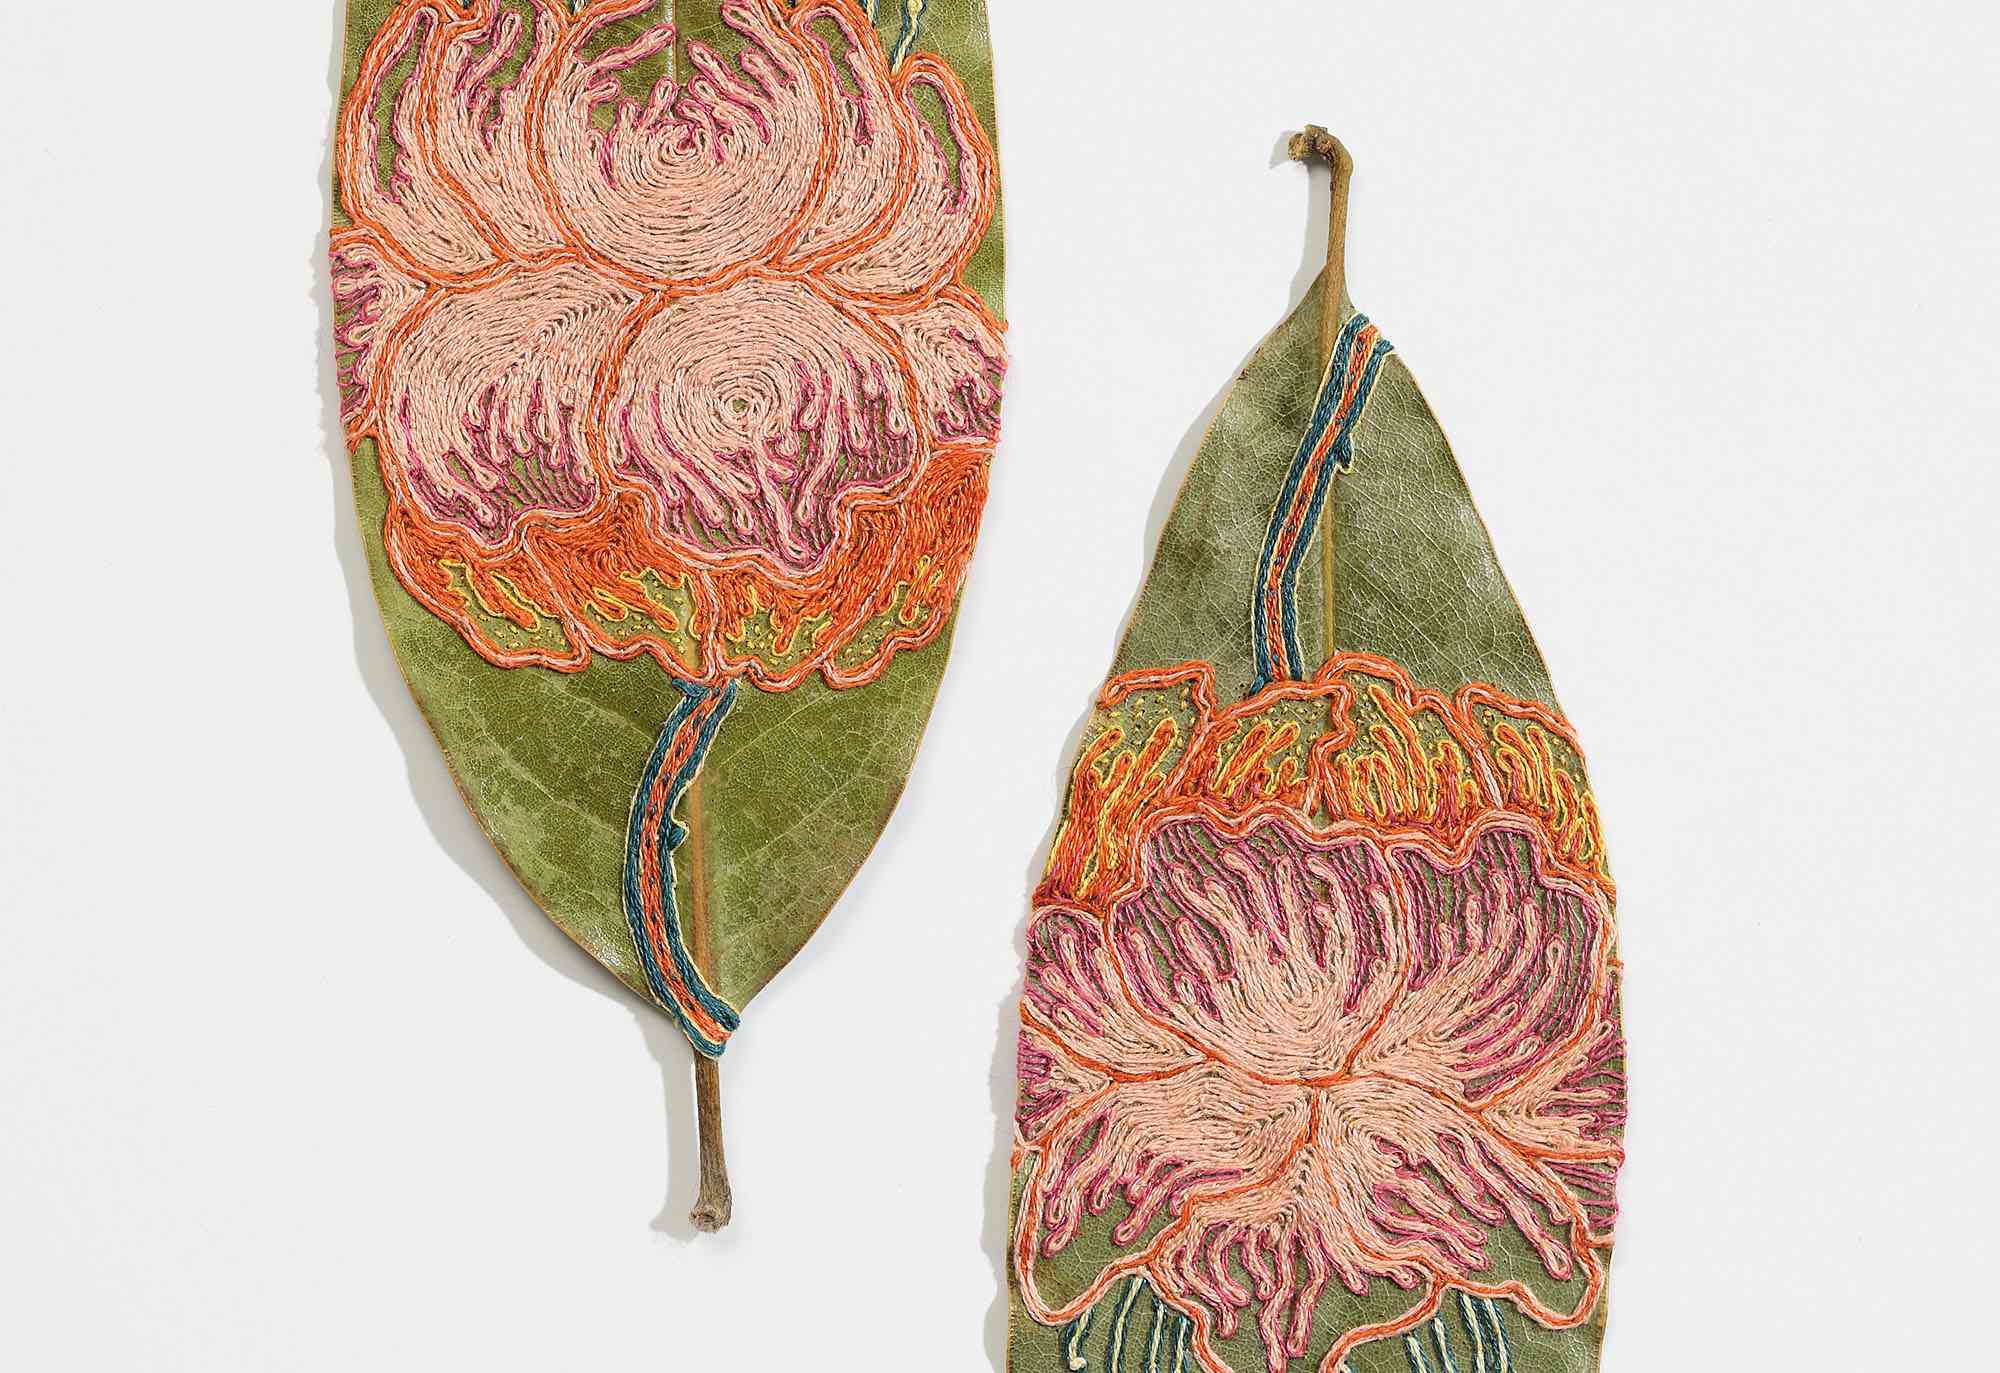 刺绣剪纸叶艺术品希拉里·沃特斯·法伊尔